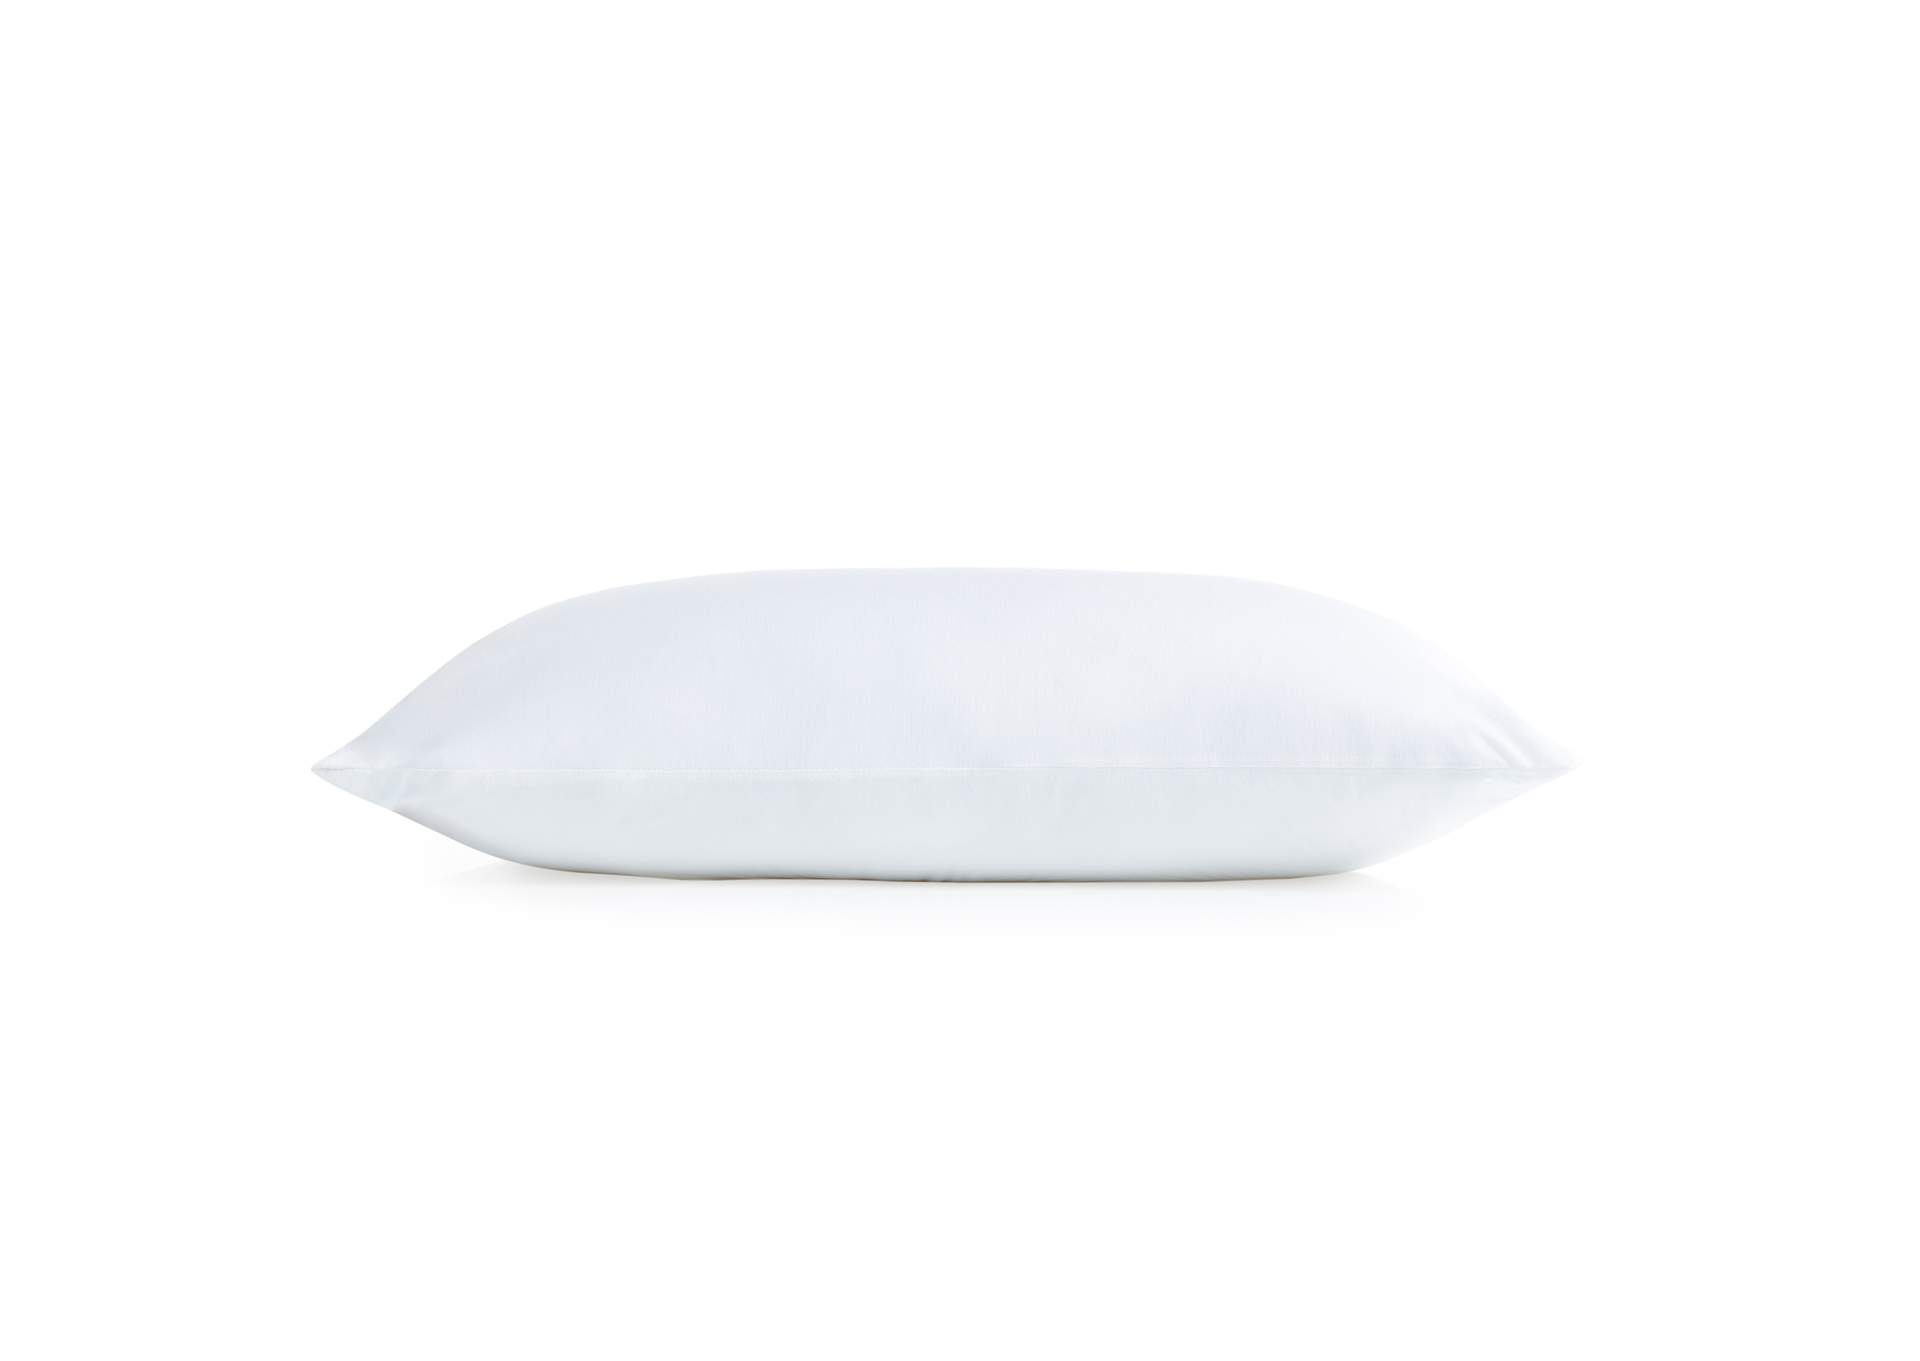 Malouf Encase LT Pillow Protector - Queen Size,Malouf